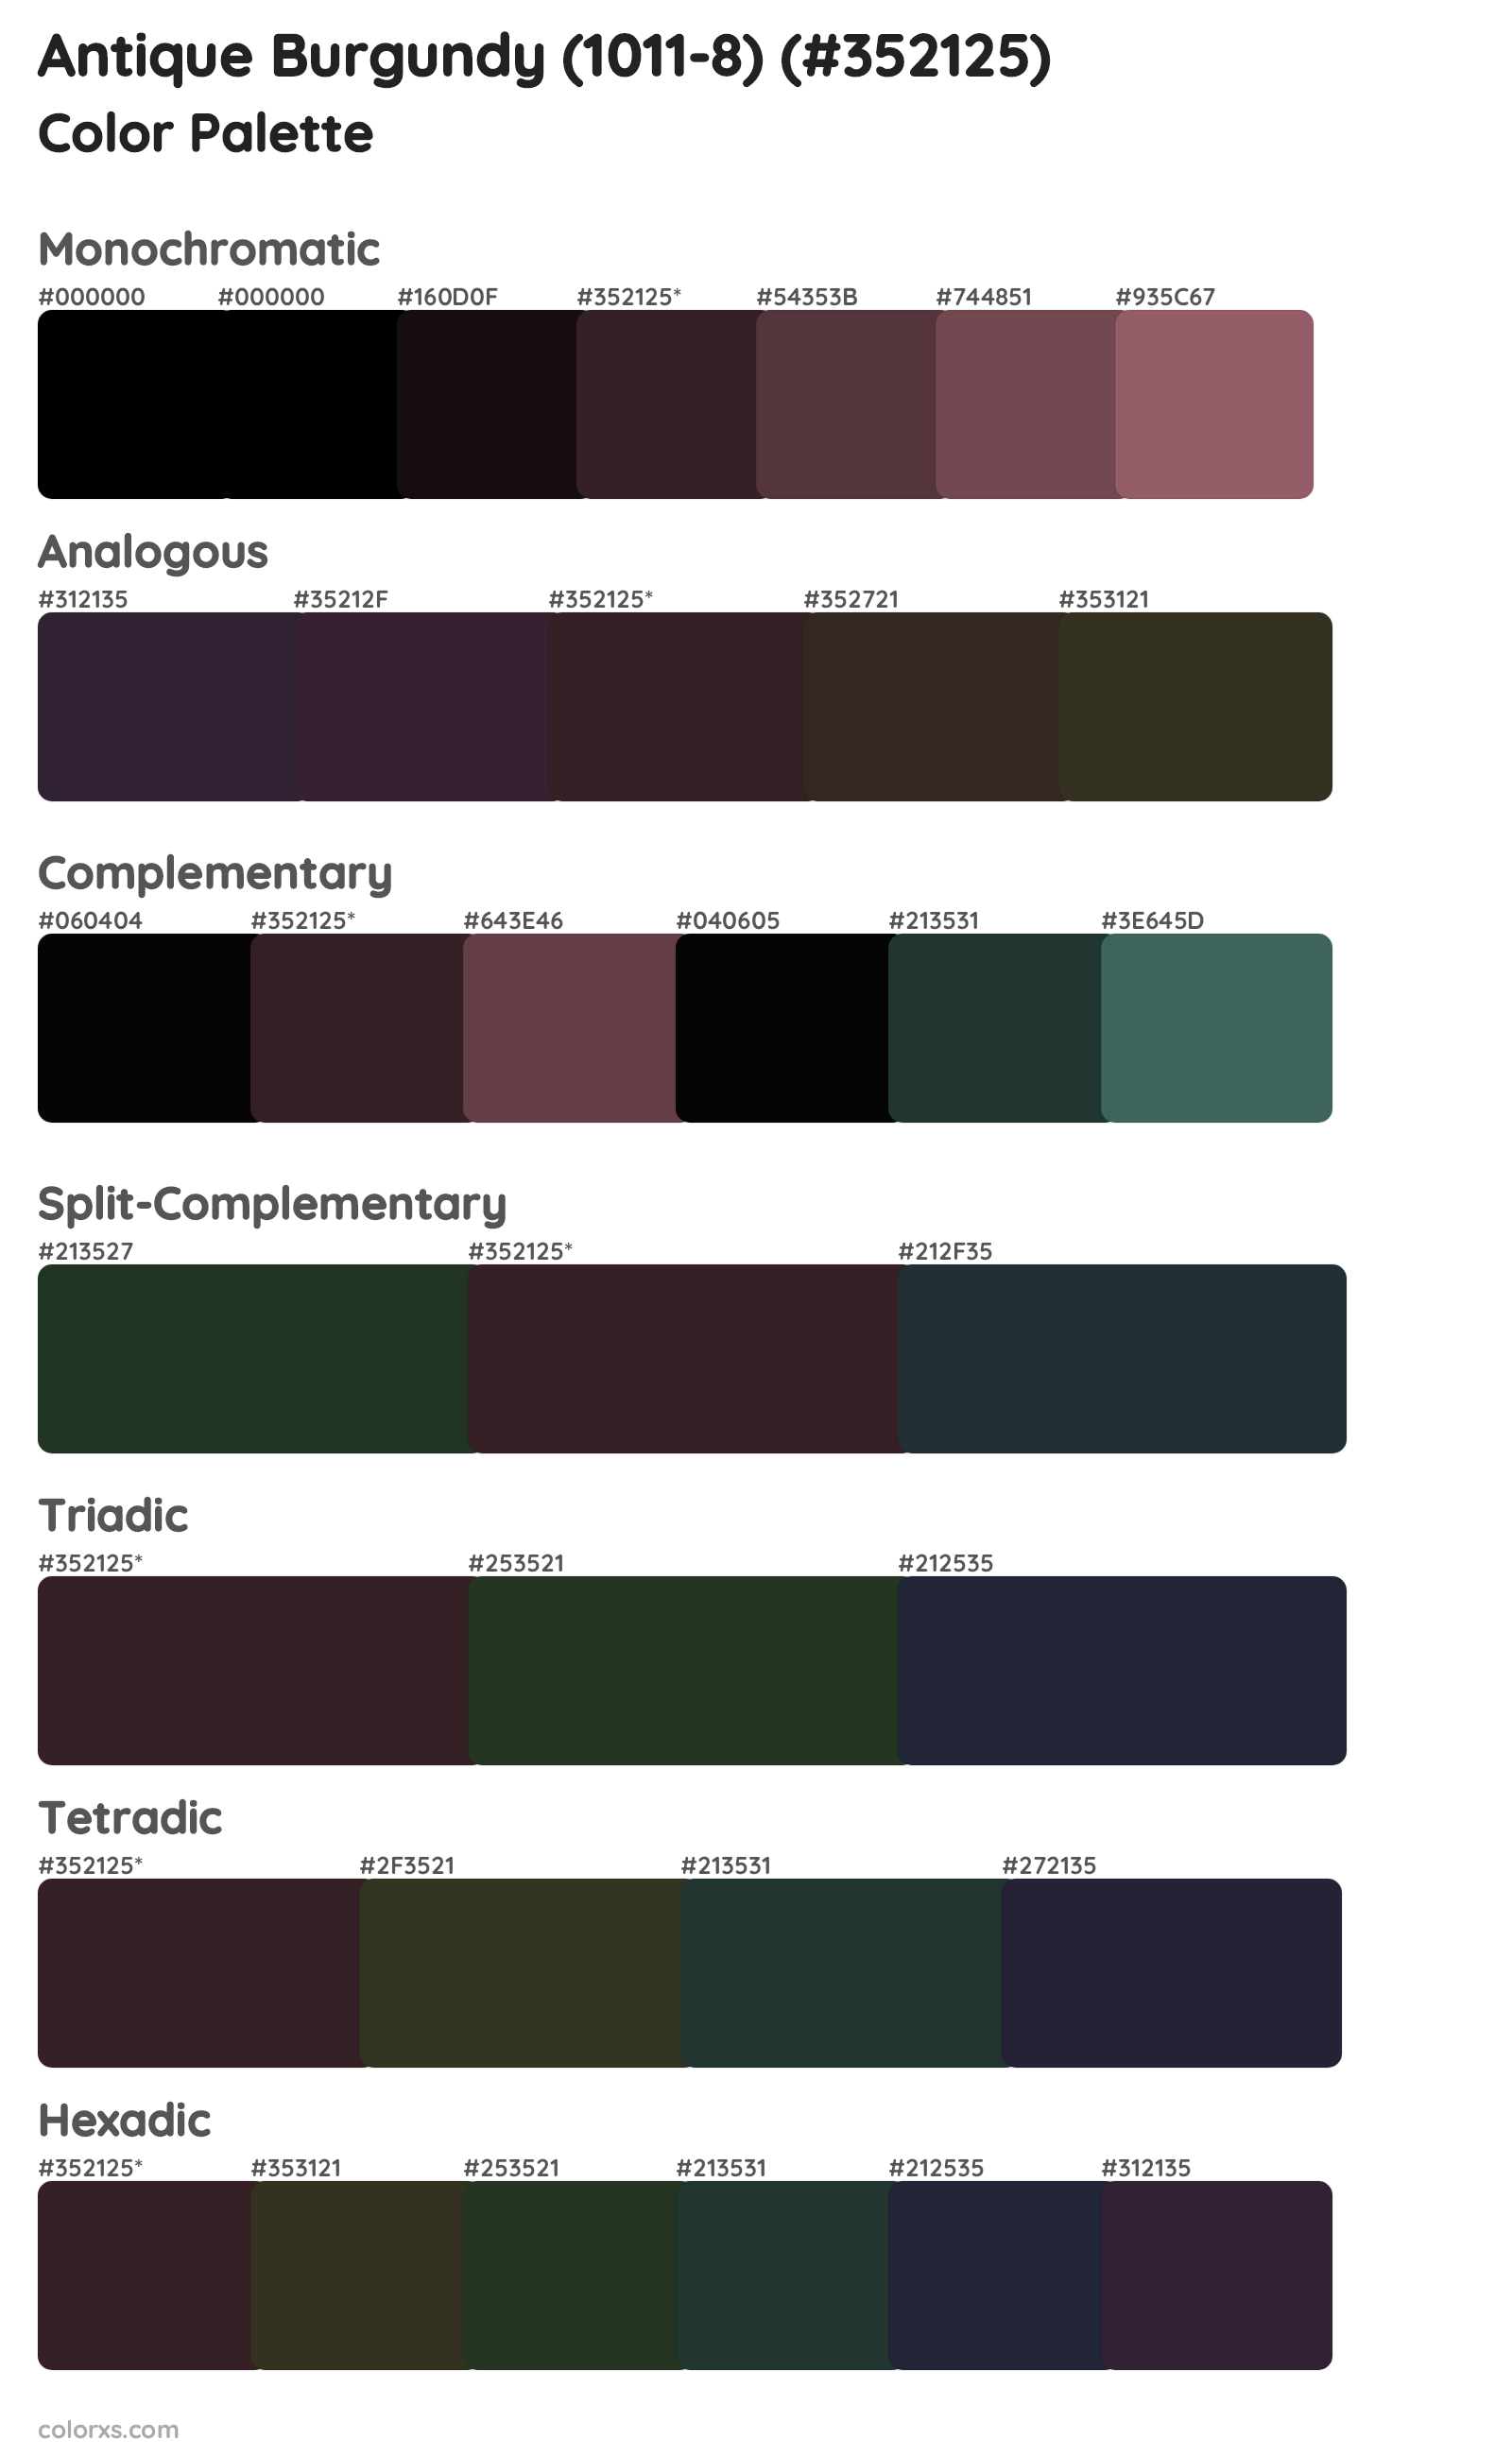 Antique Burgundy (1011-8) Color Scheme Palettes